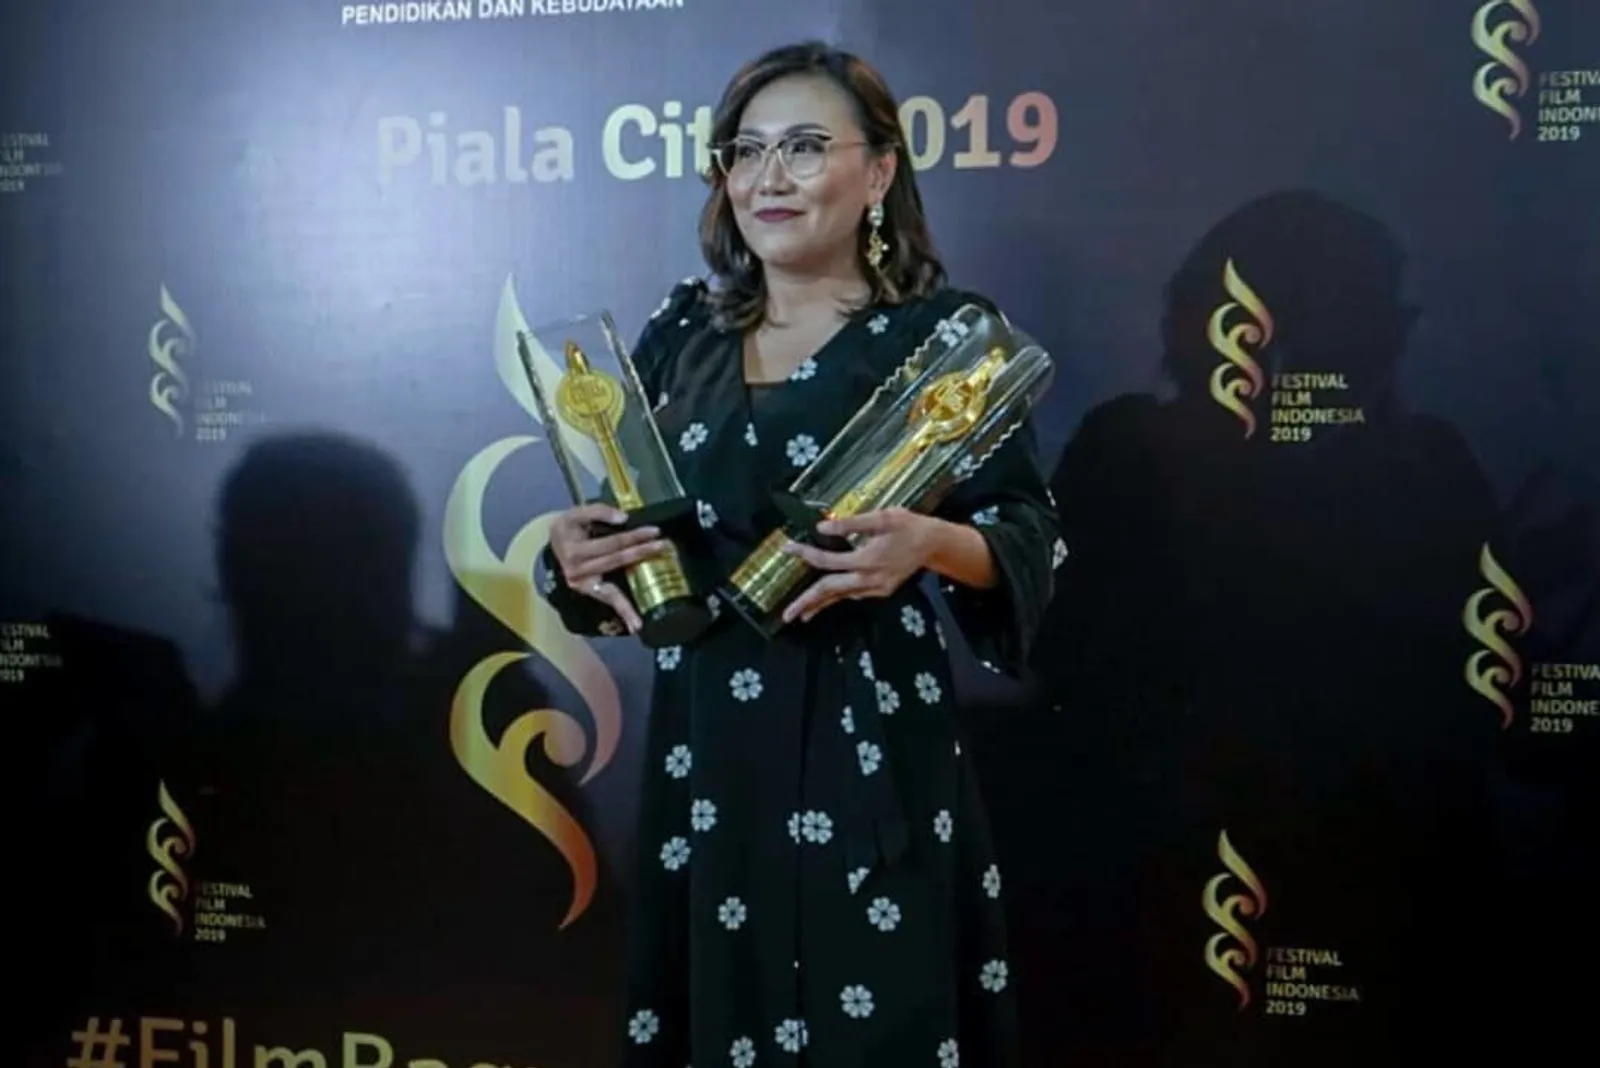 Gaya Terbaik Para Artis di Karpet Merah Festival Film Indonesia 2019